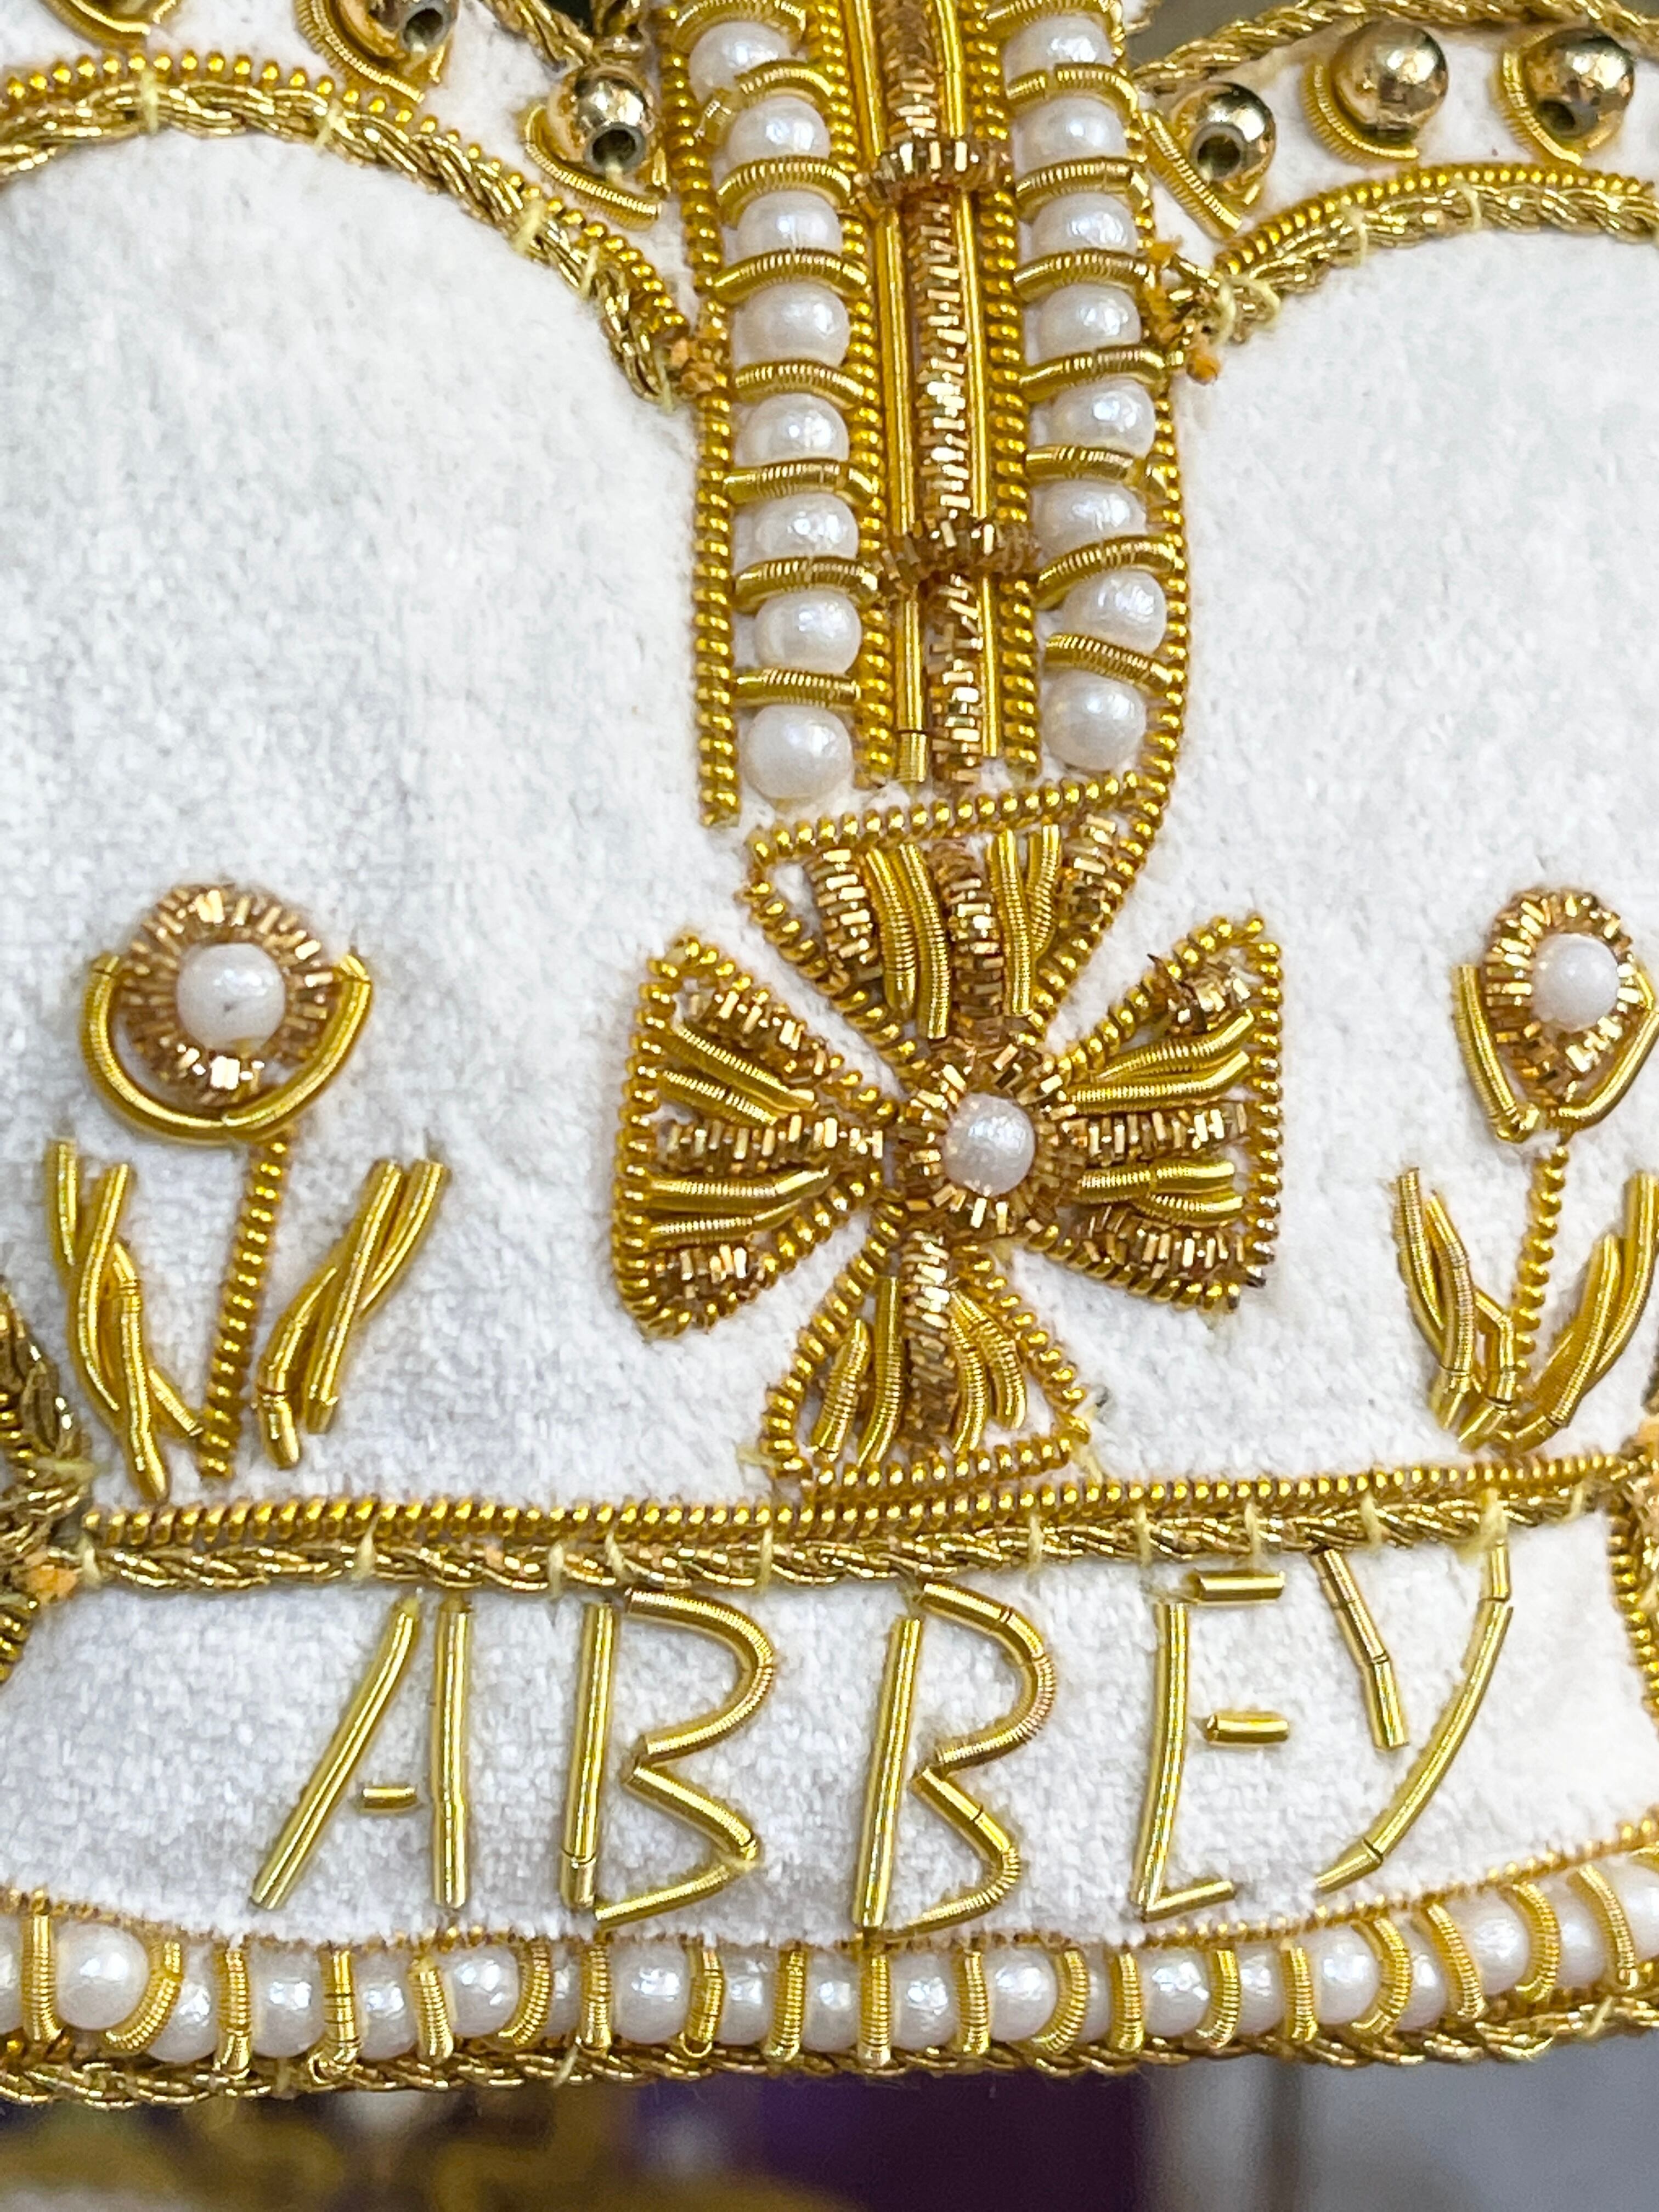 『Westminster Abbey』ウエストミンスター クラウンオーナメント 王冠 エリザベス女王 70th記念  オーナメント  Crown Decoration